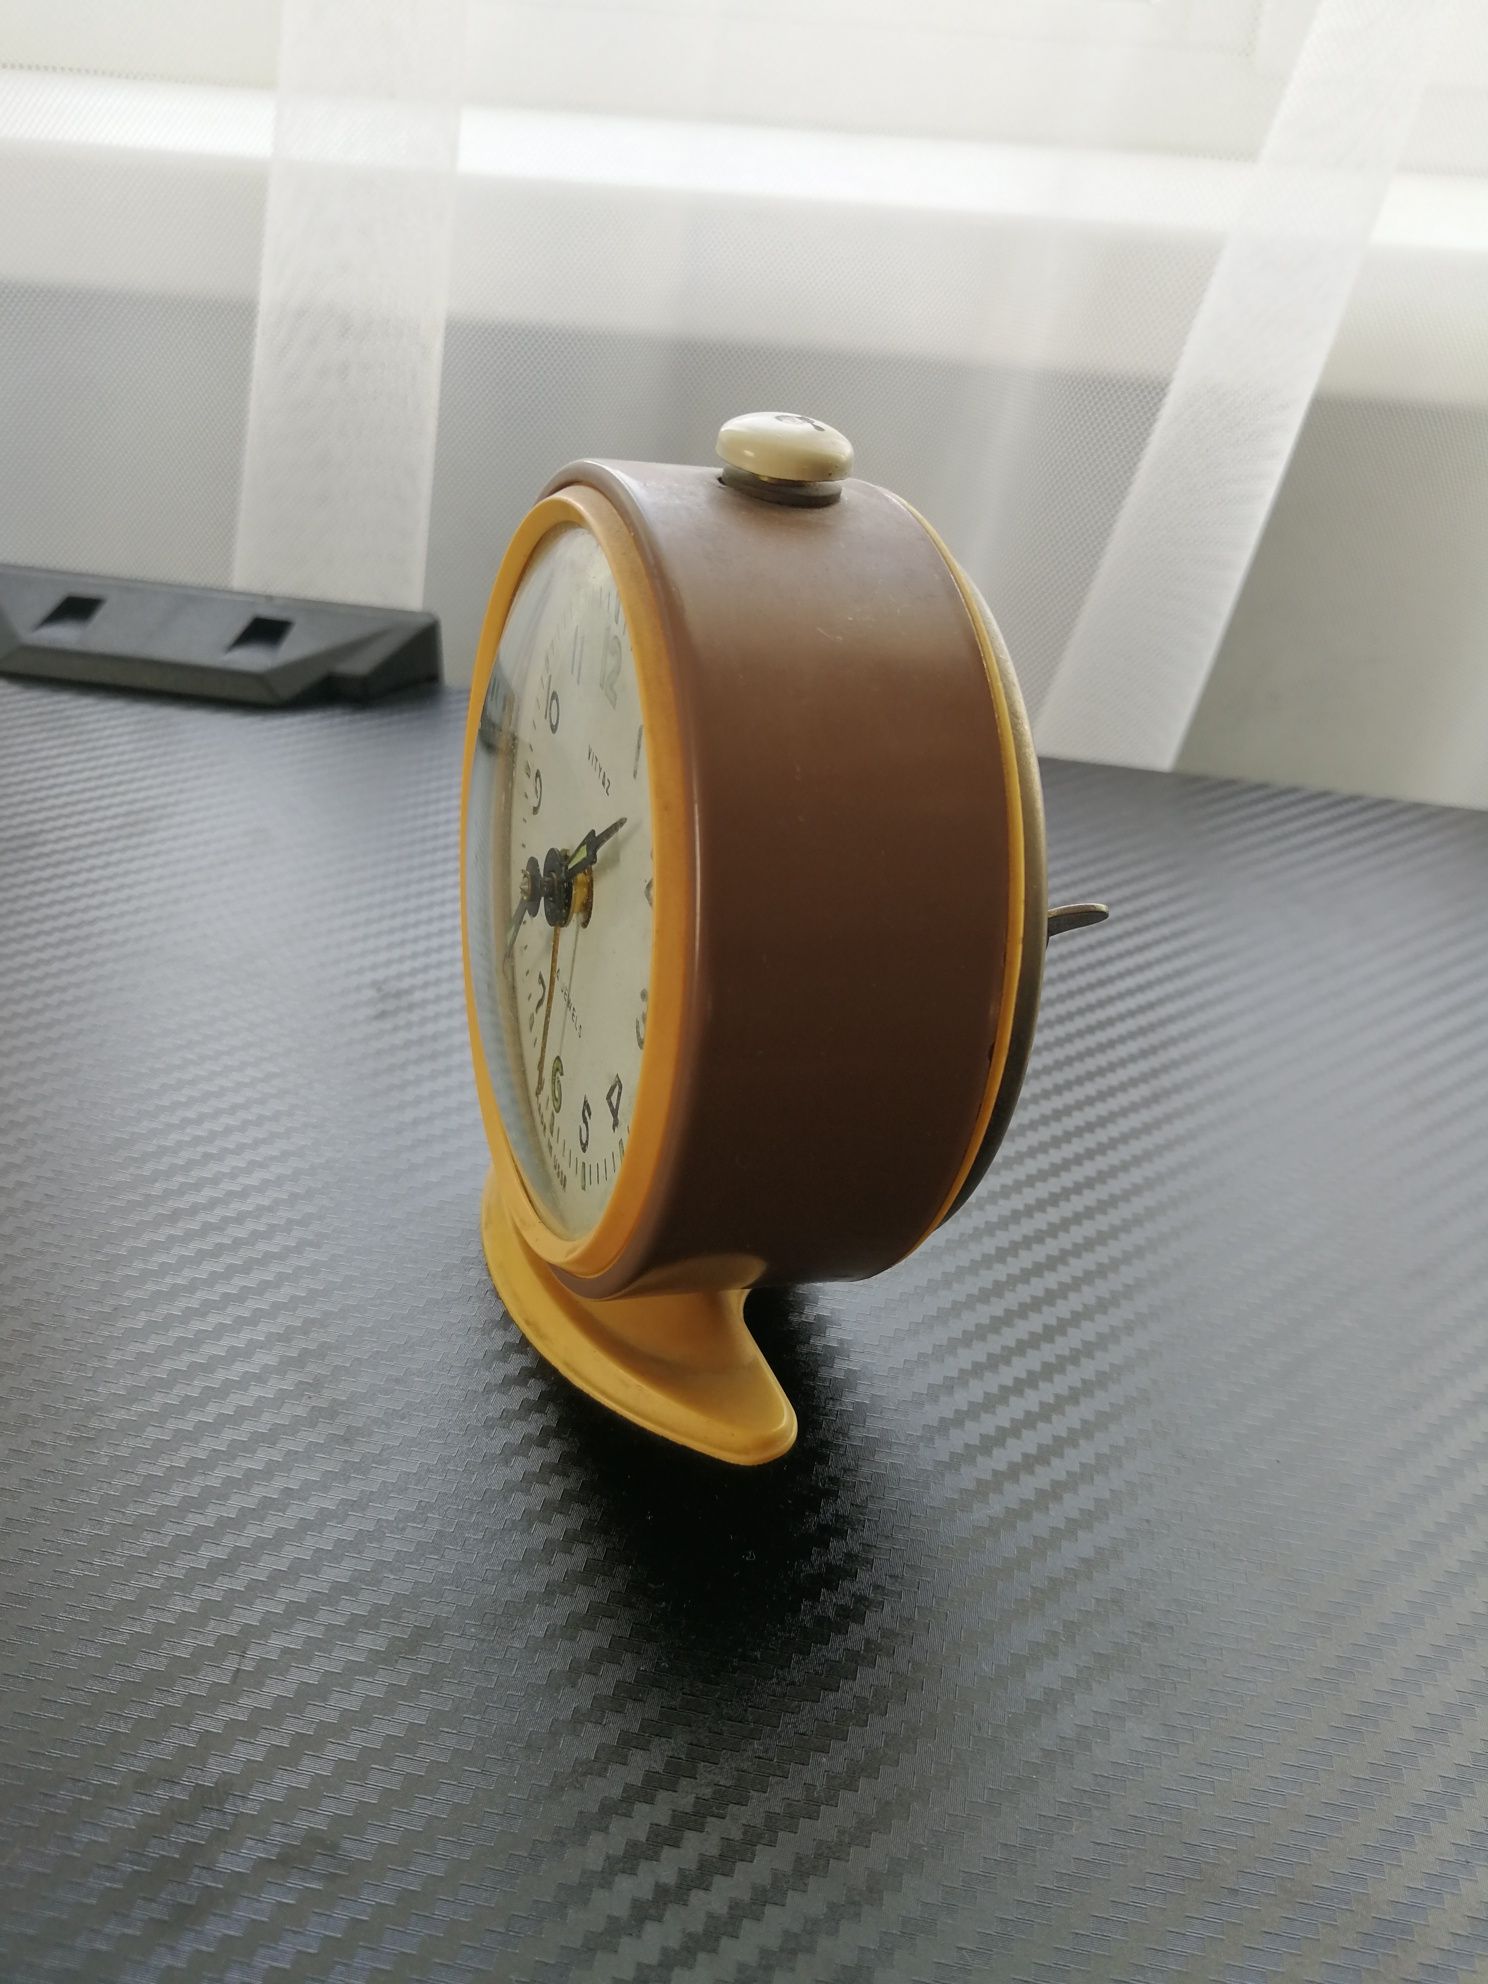 Настільний годинник будильник vityaz періоду ссср ретро